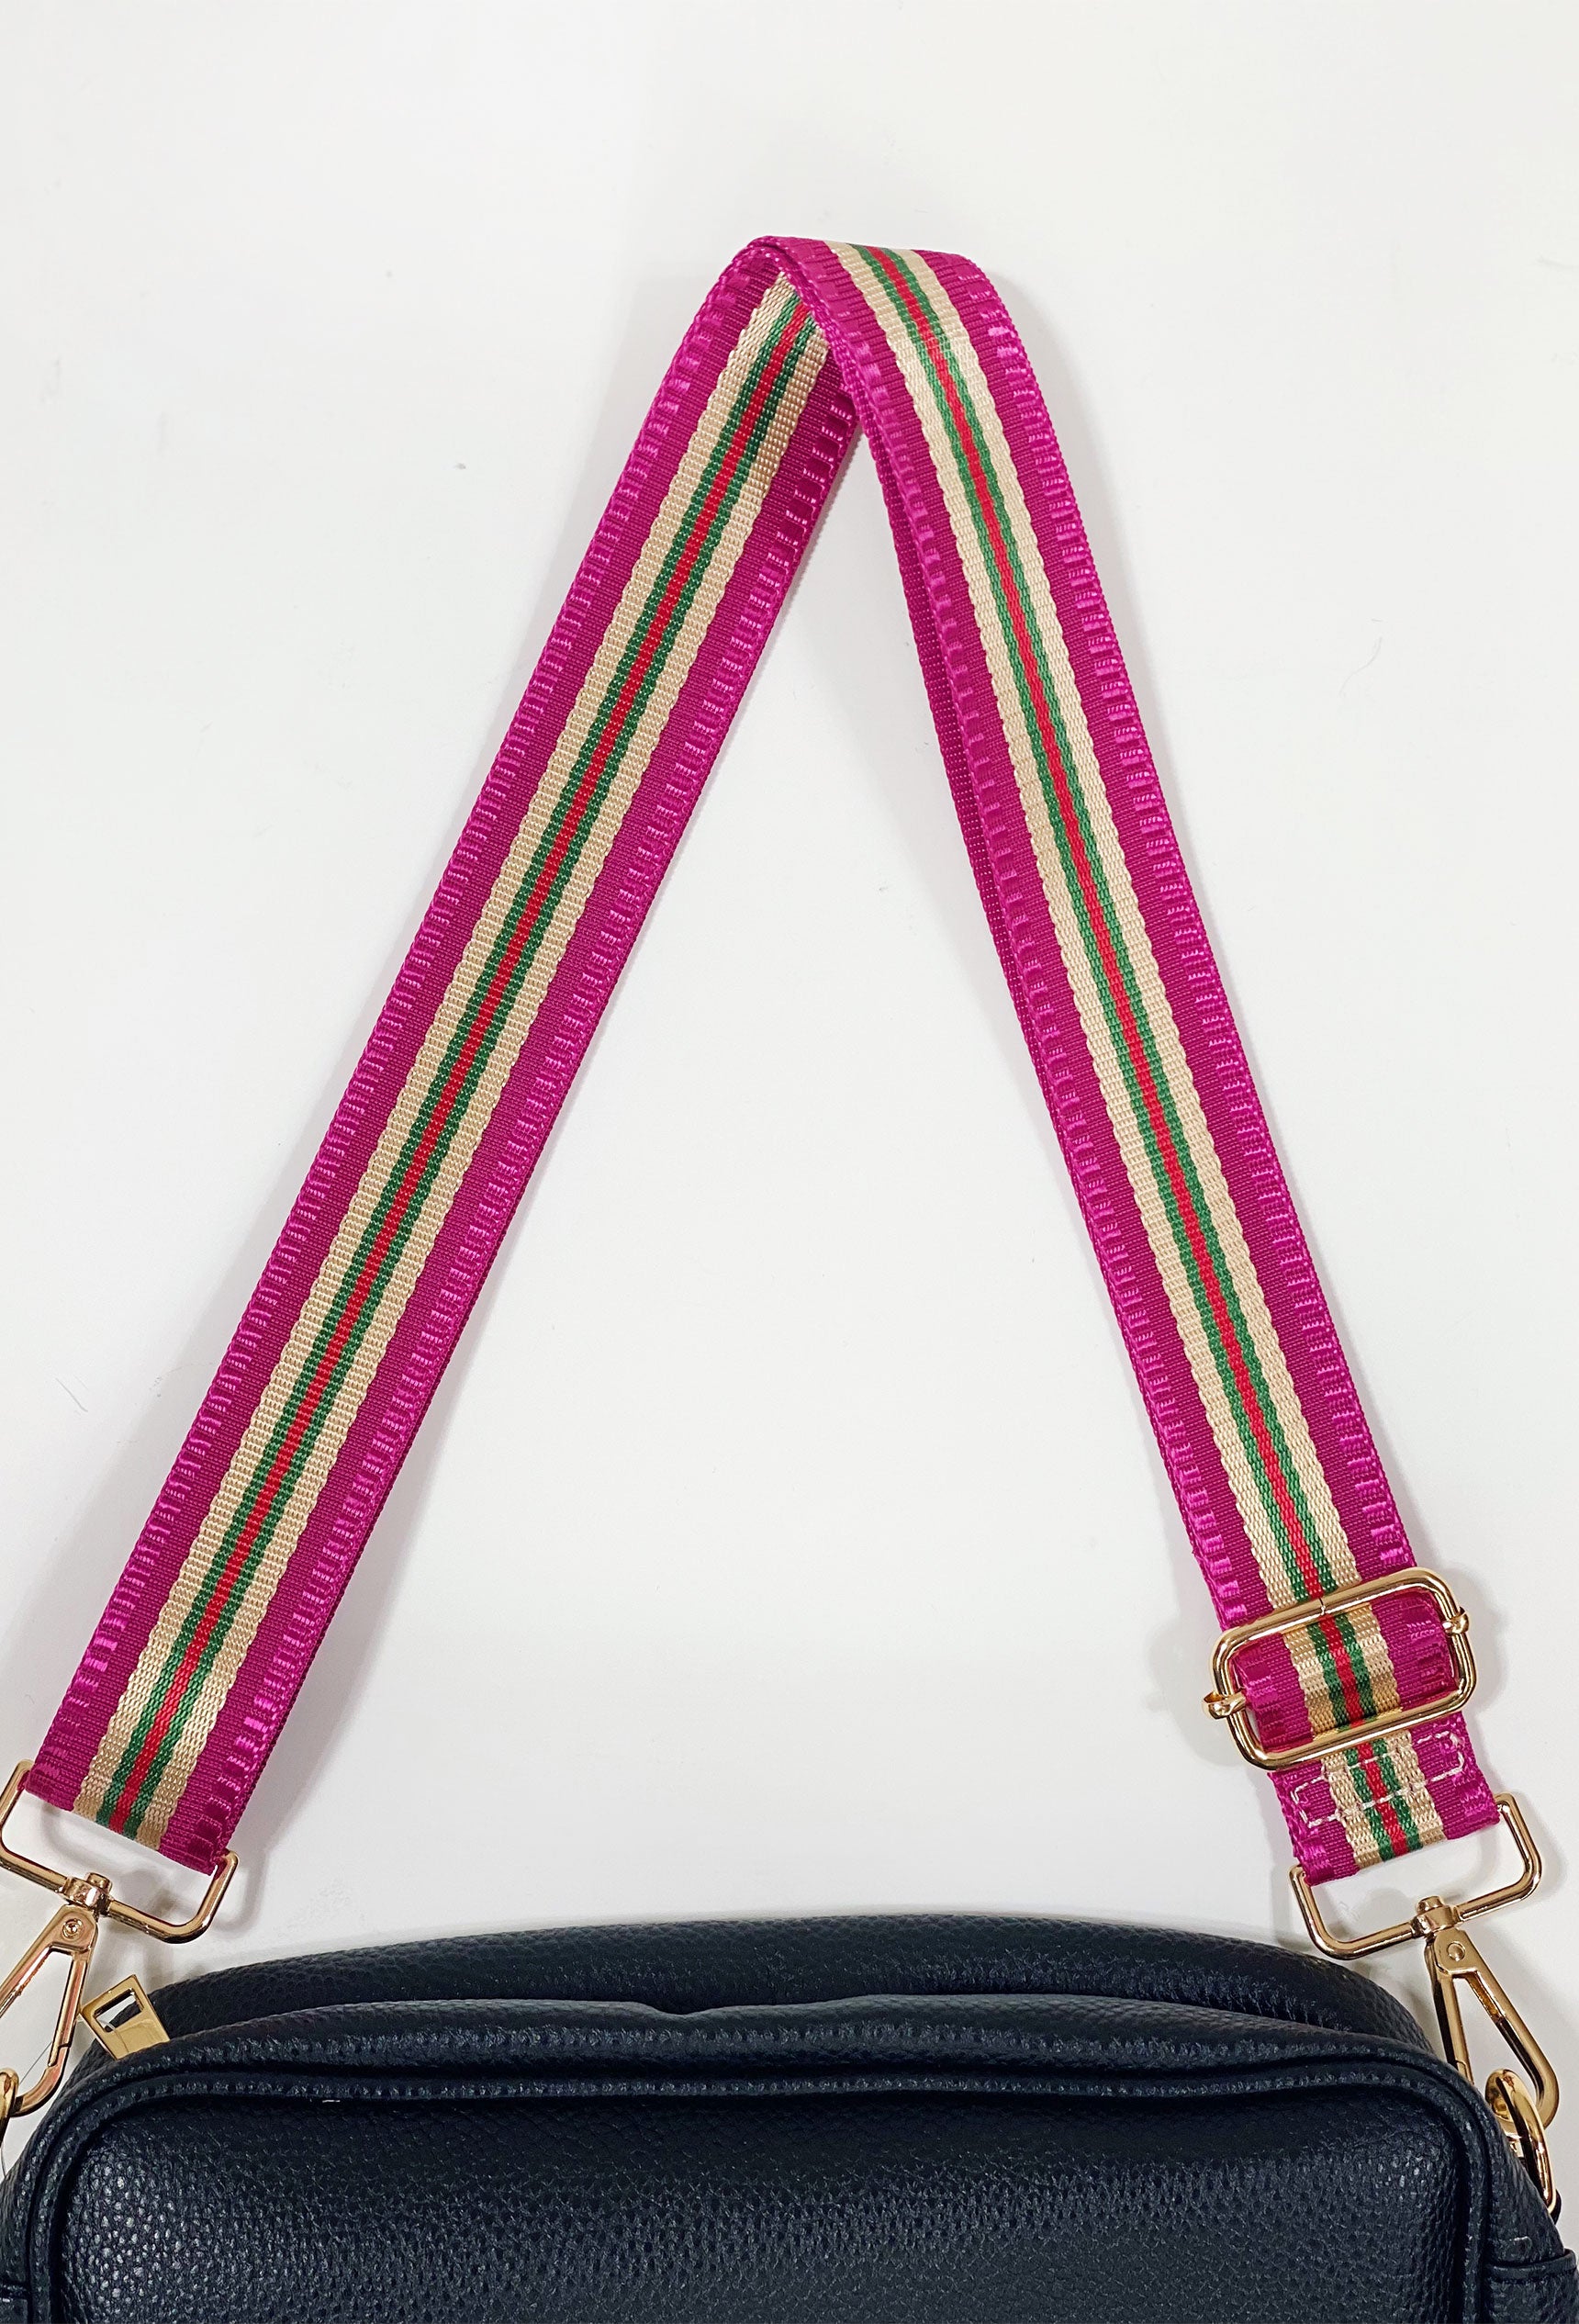 Crossbody Bag Shoulder Strap In Pink Stripe Groovy's Bag, 44% OFF